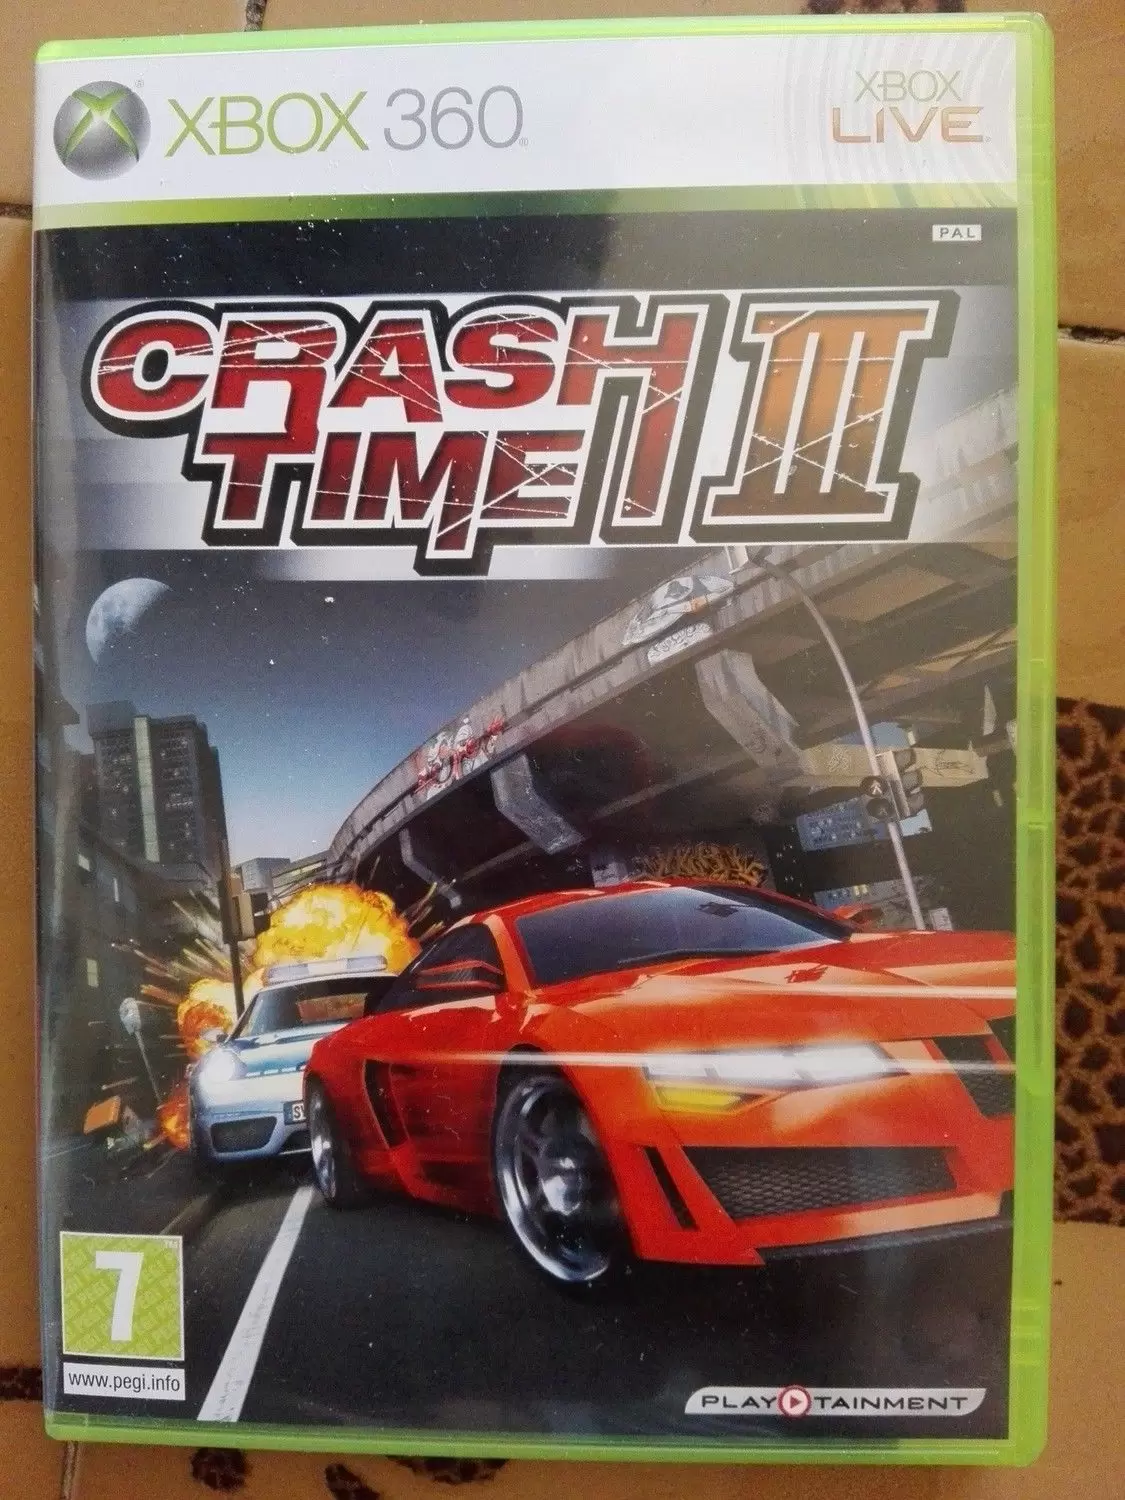 XBOX 360 Games - Crash Time III